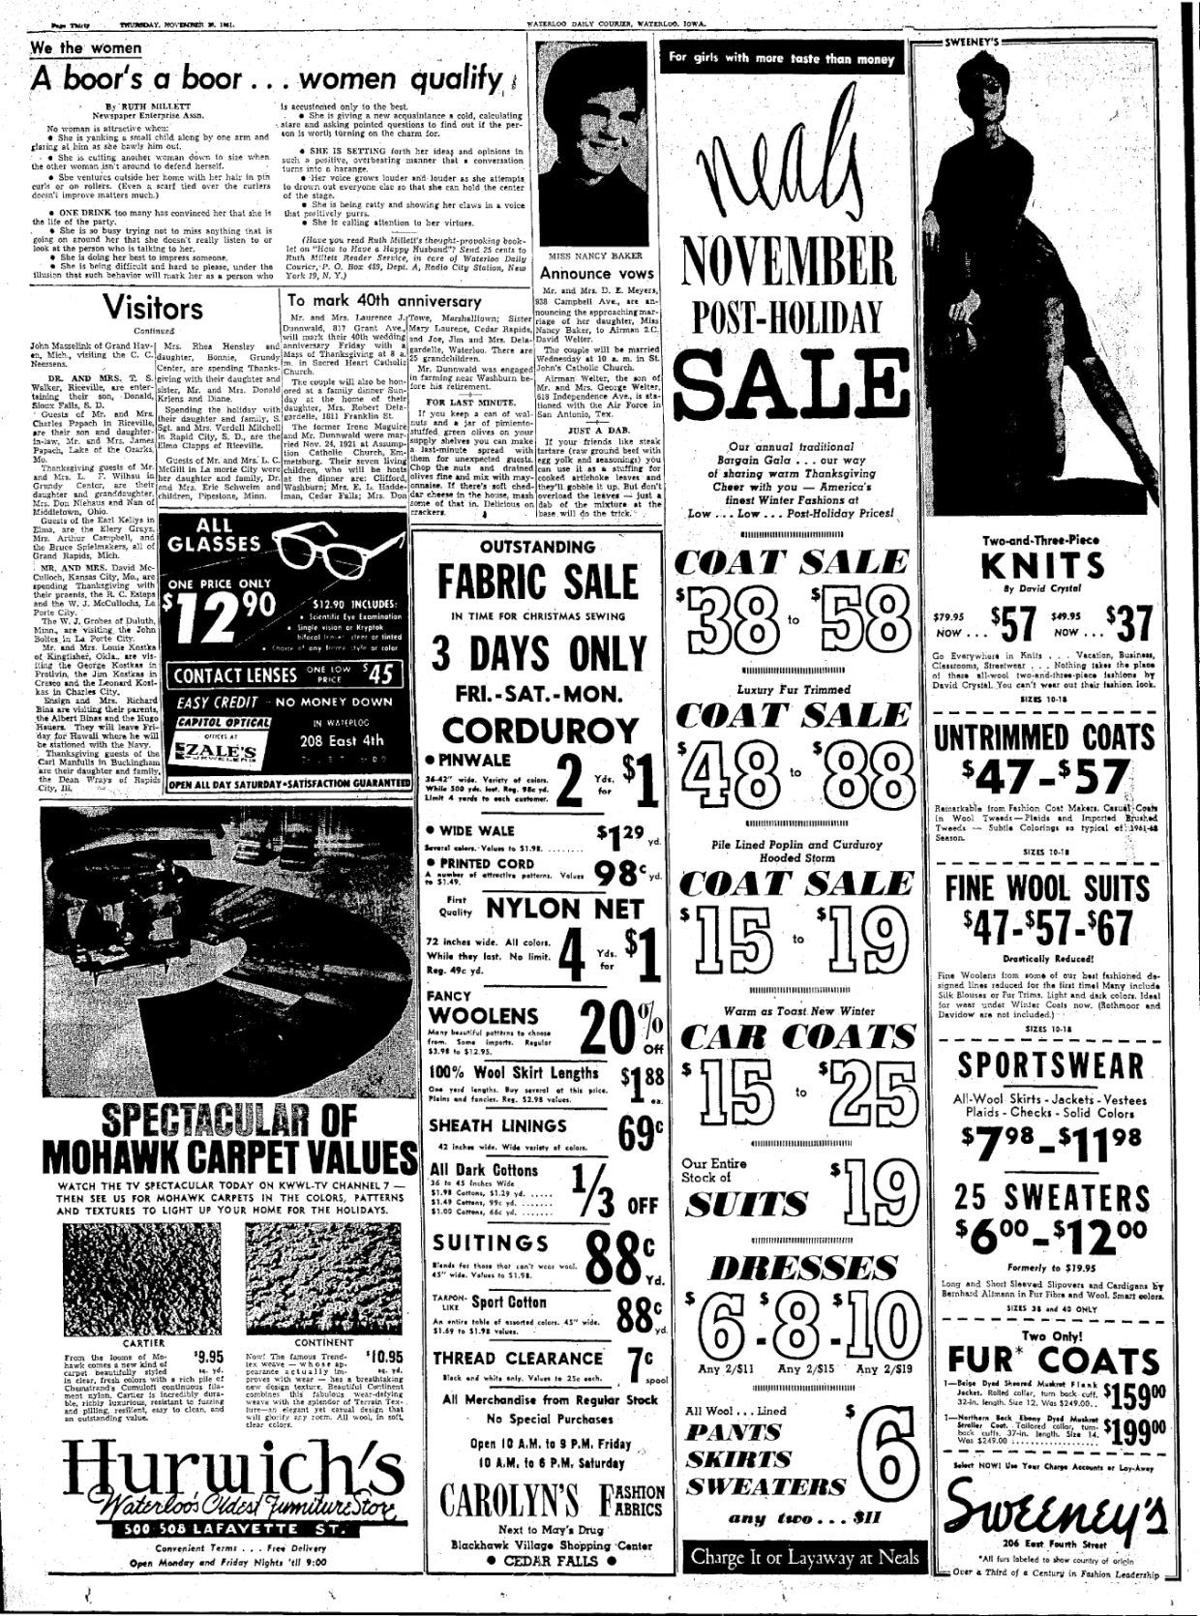 1961 Christmas sales